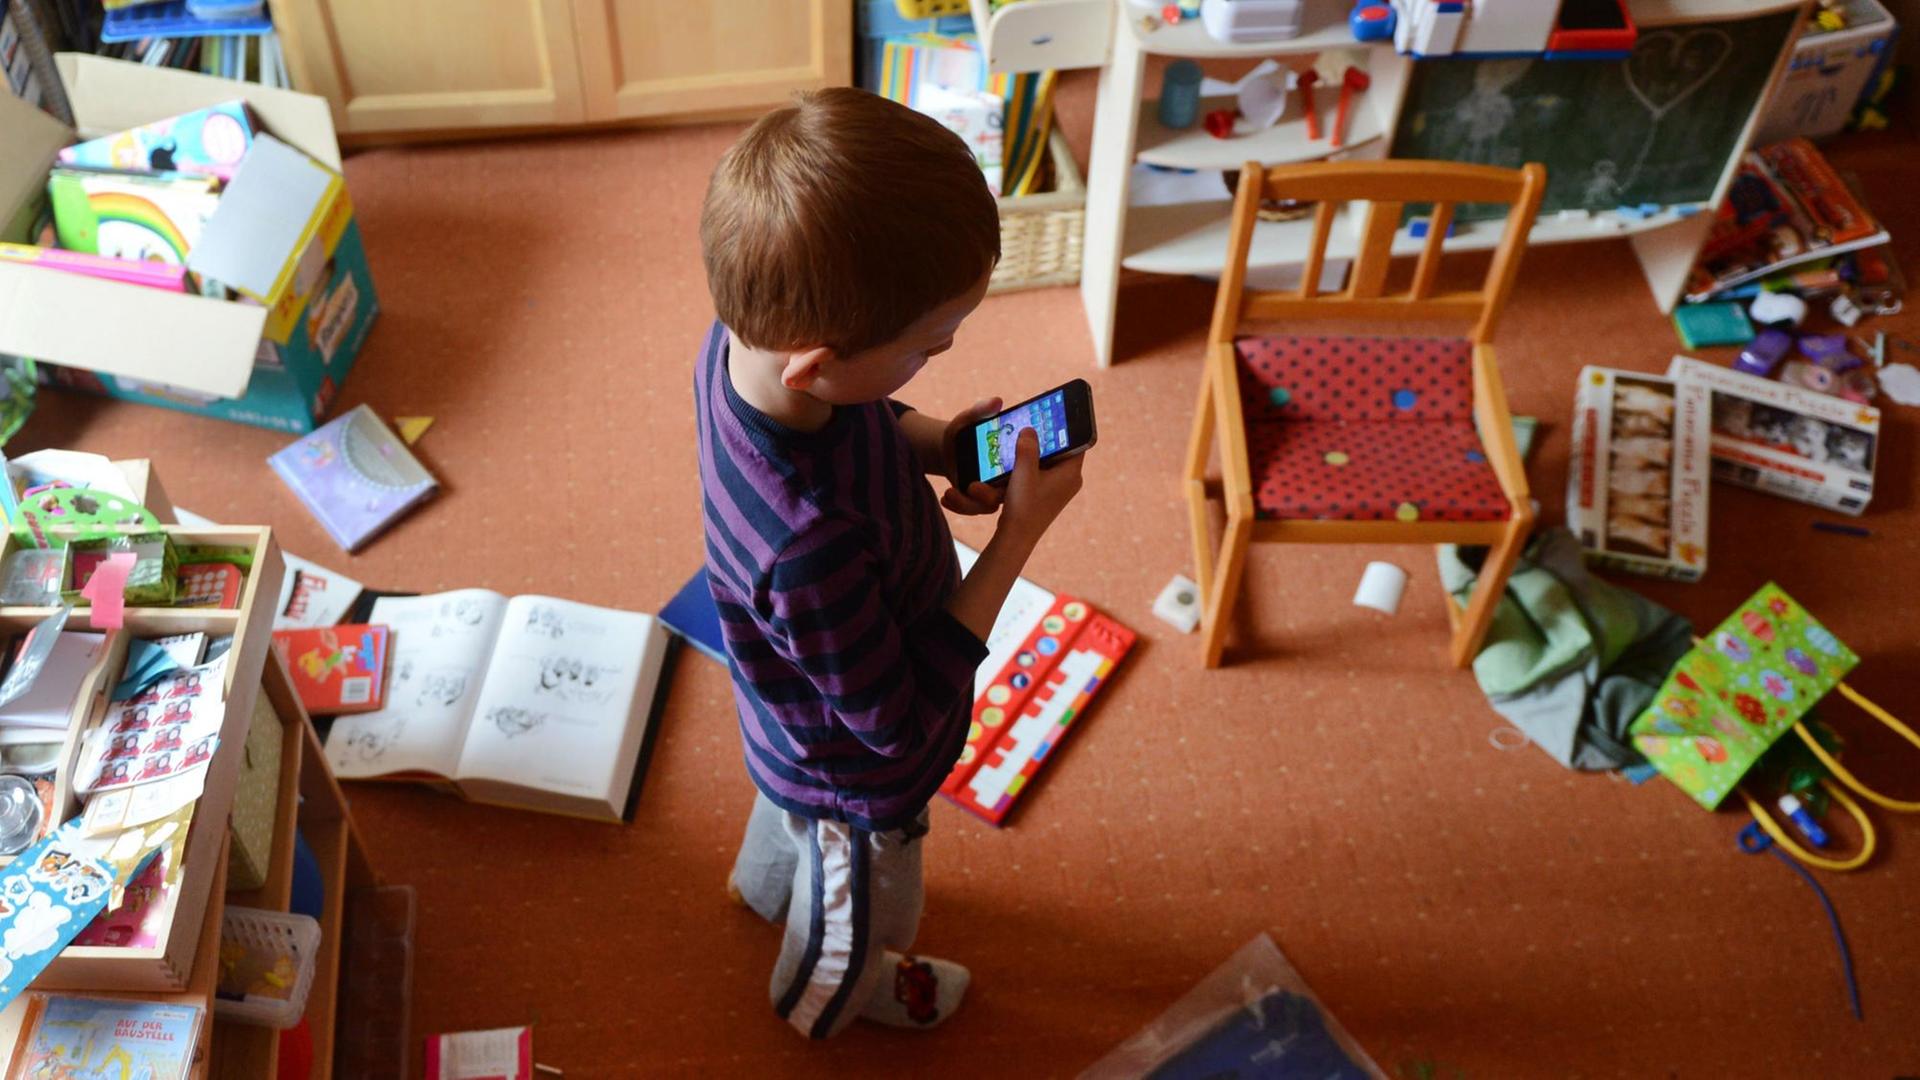 Ein fünfjähriger Junge spielt in seinem unaufgeräumten Kinderzimmer auf einem iPhone ein Computerspiel.